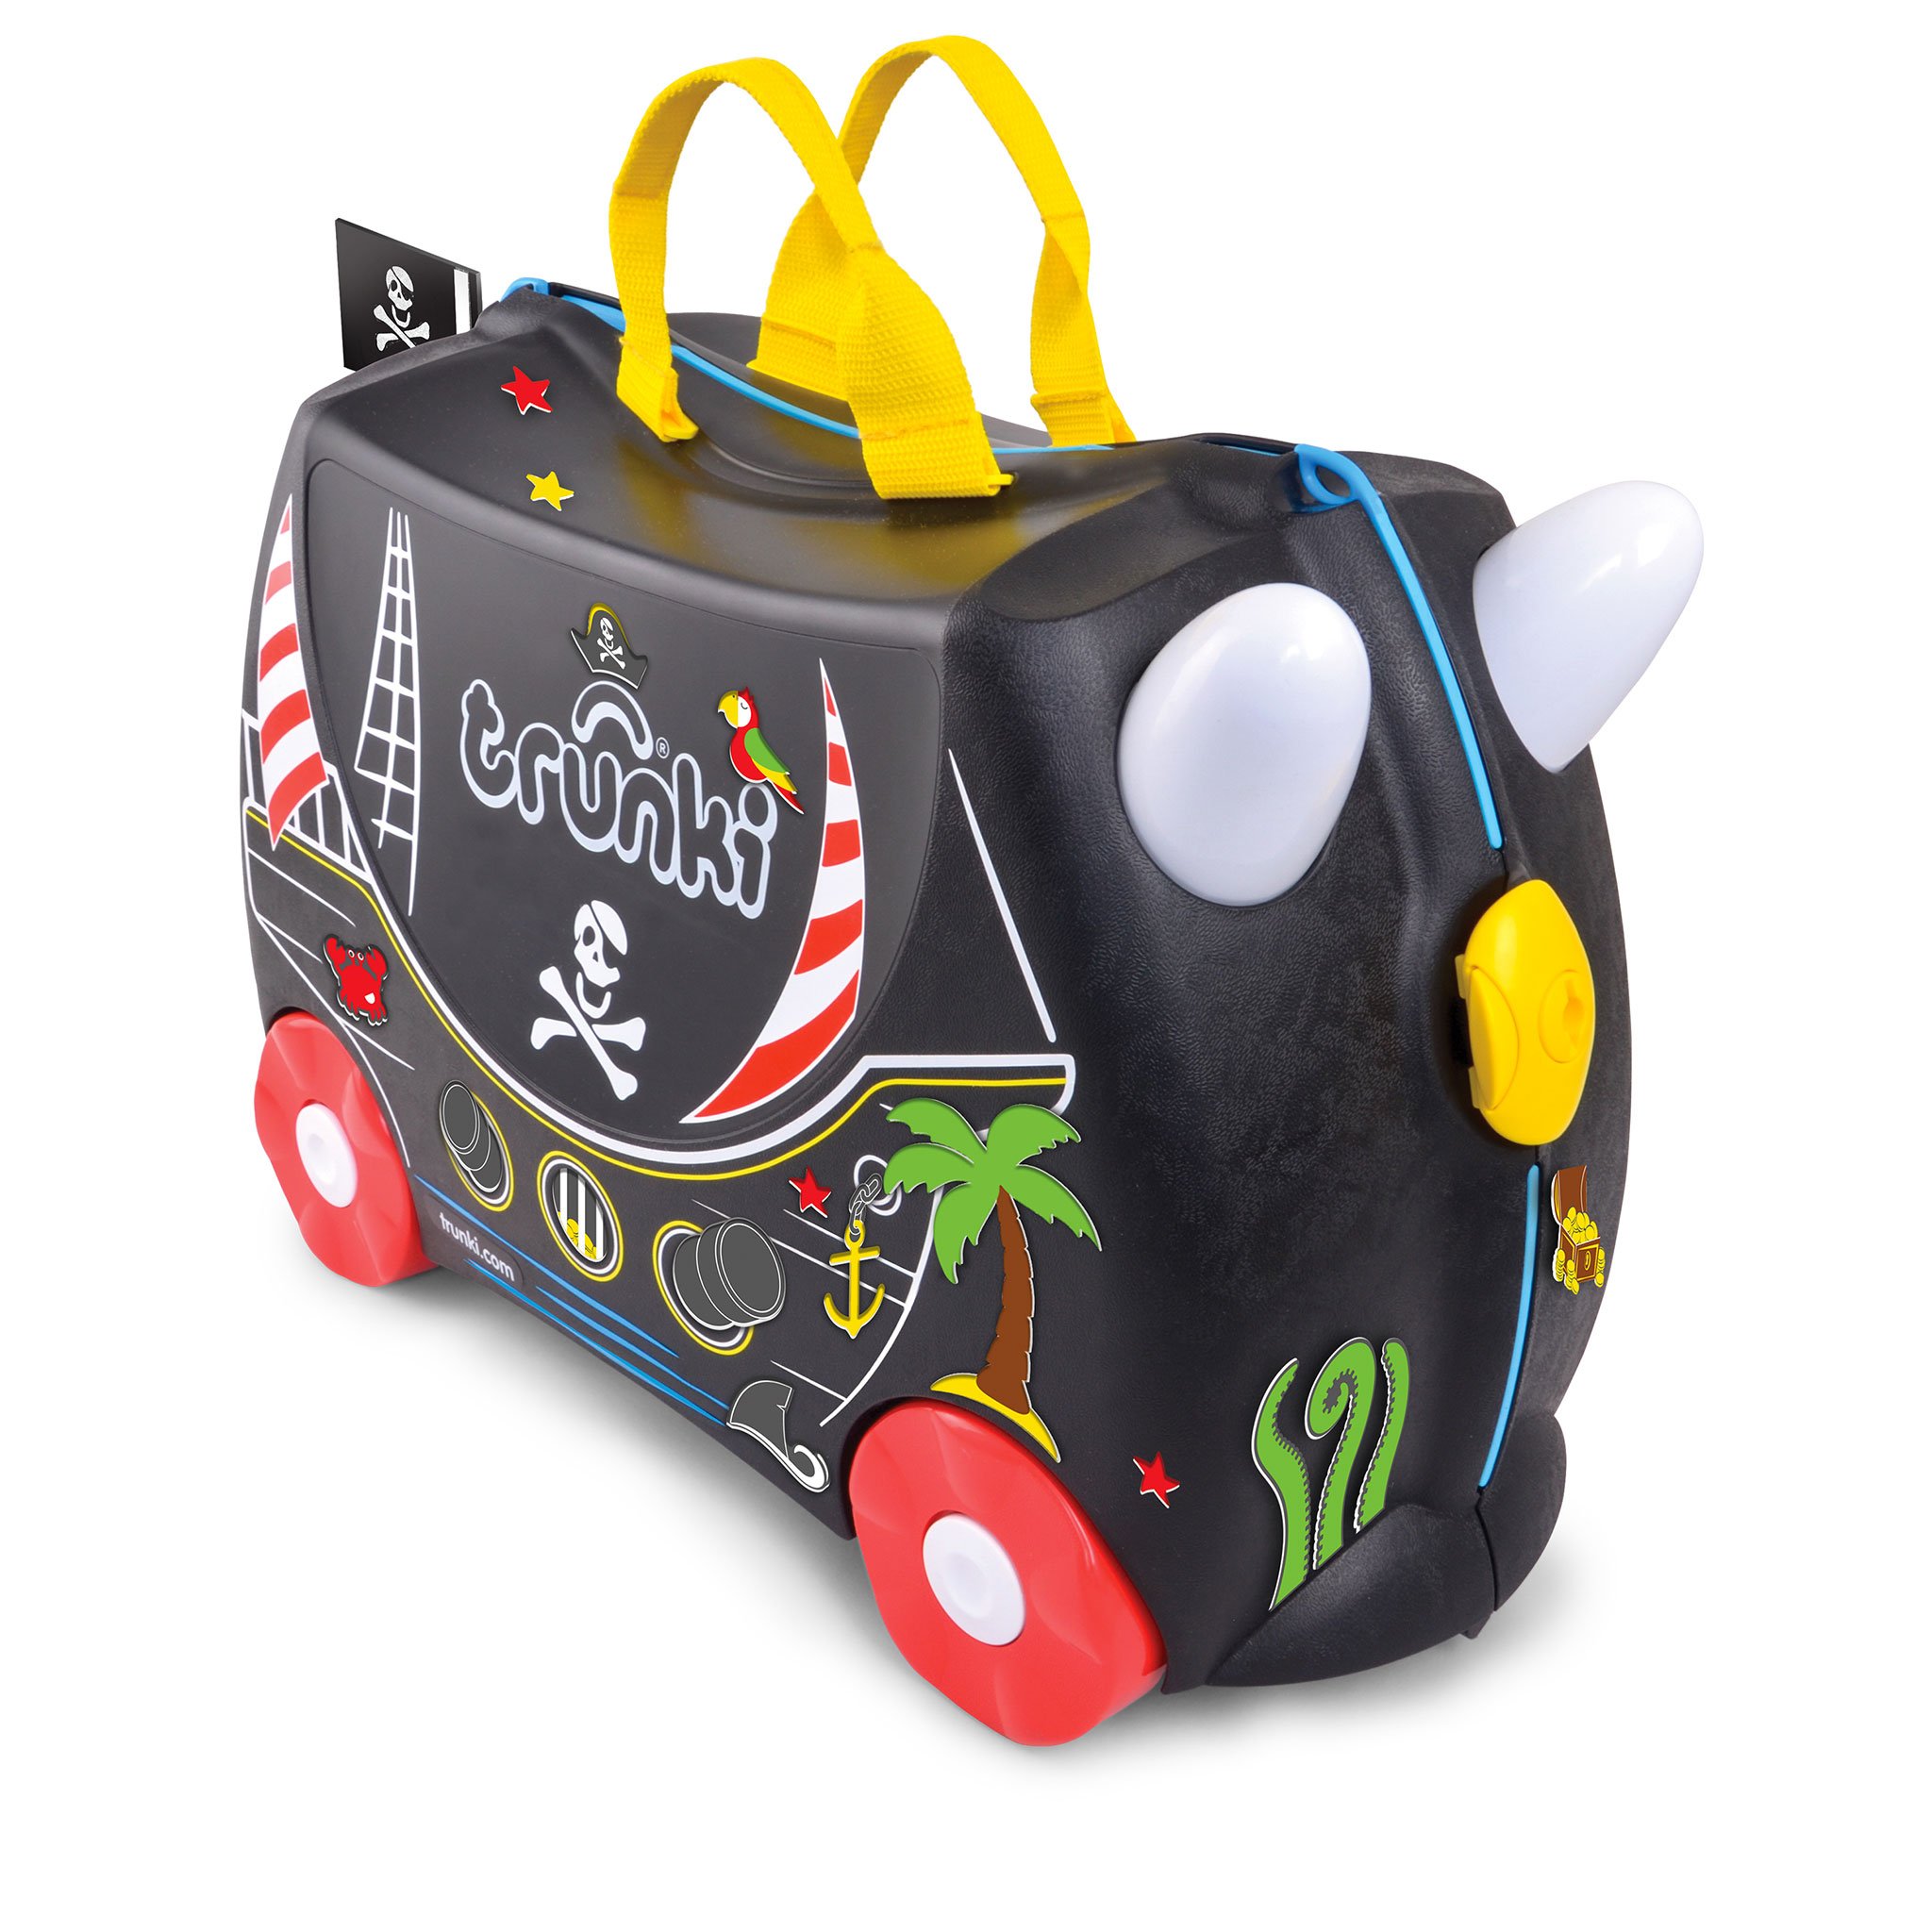 TR0312-GB-trunki-valigetta-cavalcabile-traino-bambini-viaggiare-colorata.jpg